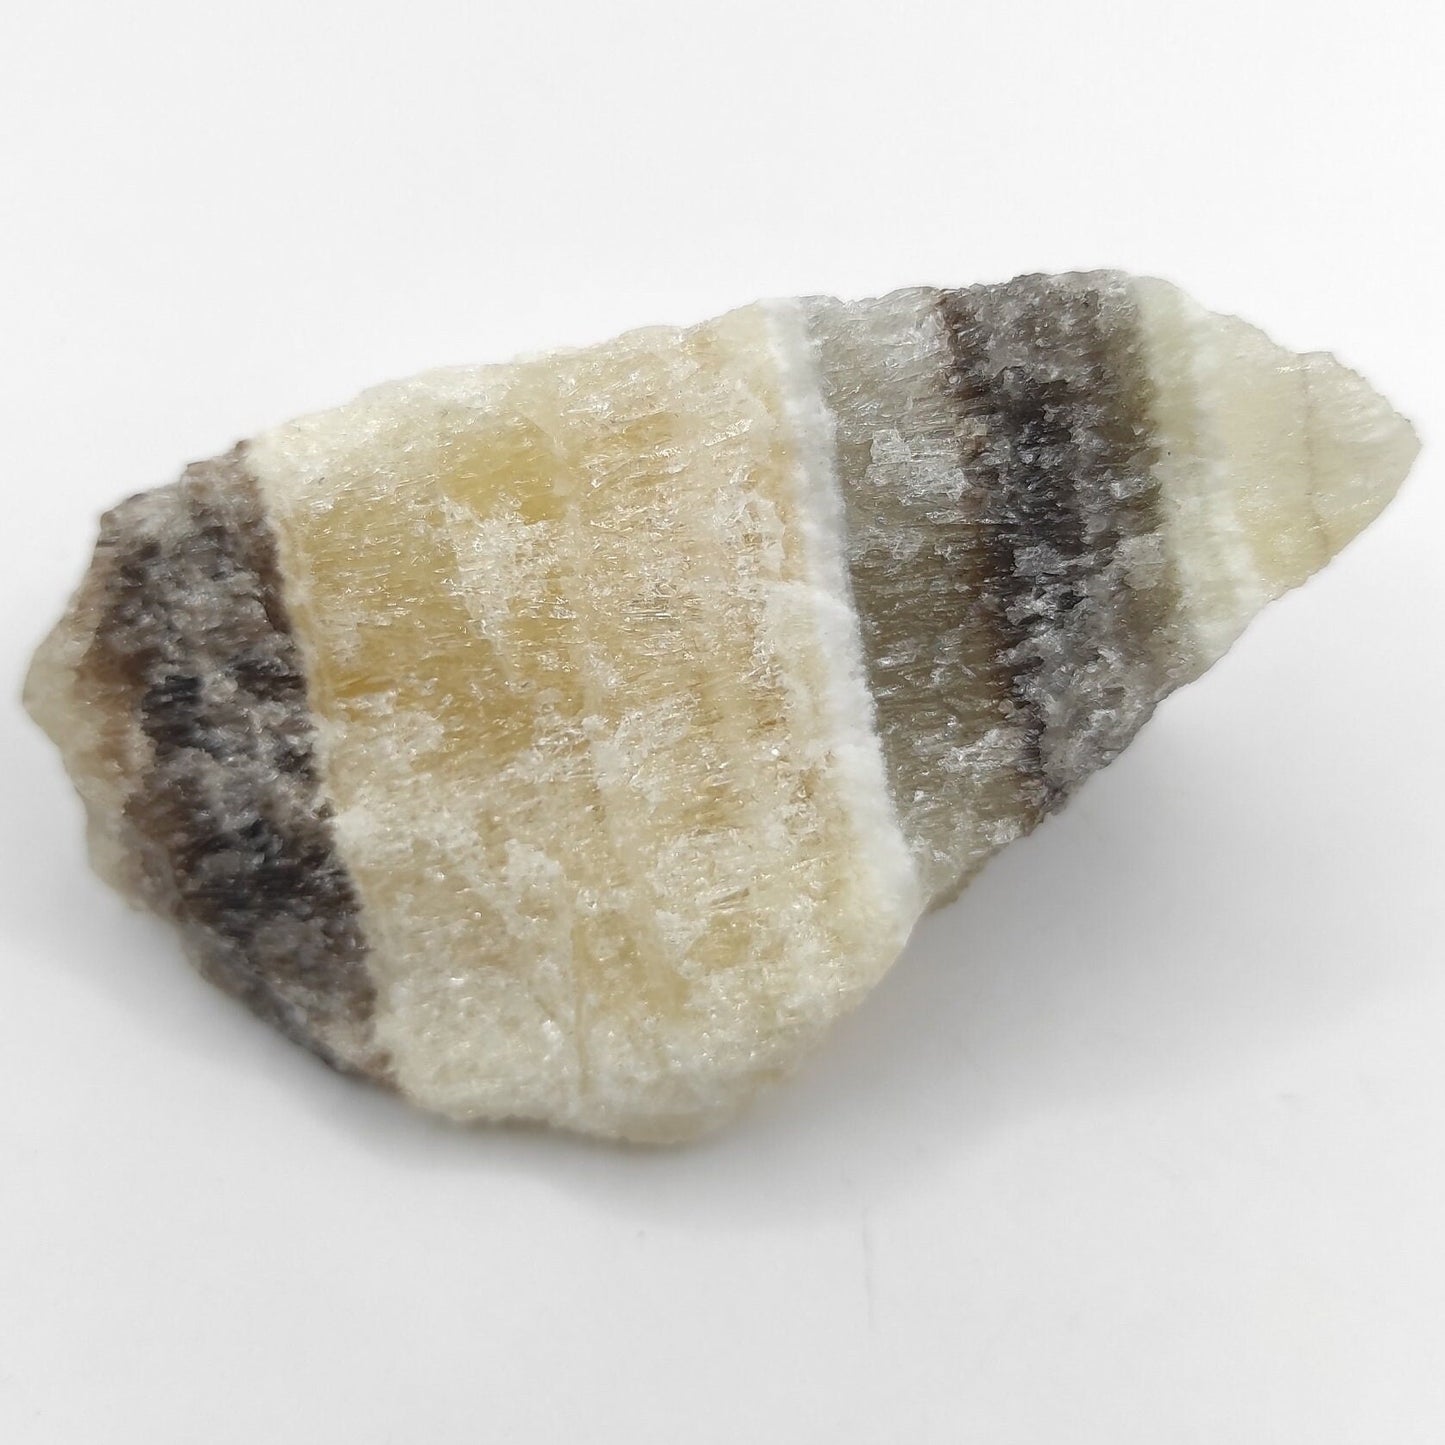 92g Zebra Calcite - Patterned Calcite Crystal - Chihuahua, Mexico - Natural Calcite - Calcite Stone - Raw Calcite Piece - Rough Calcite